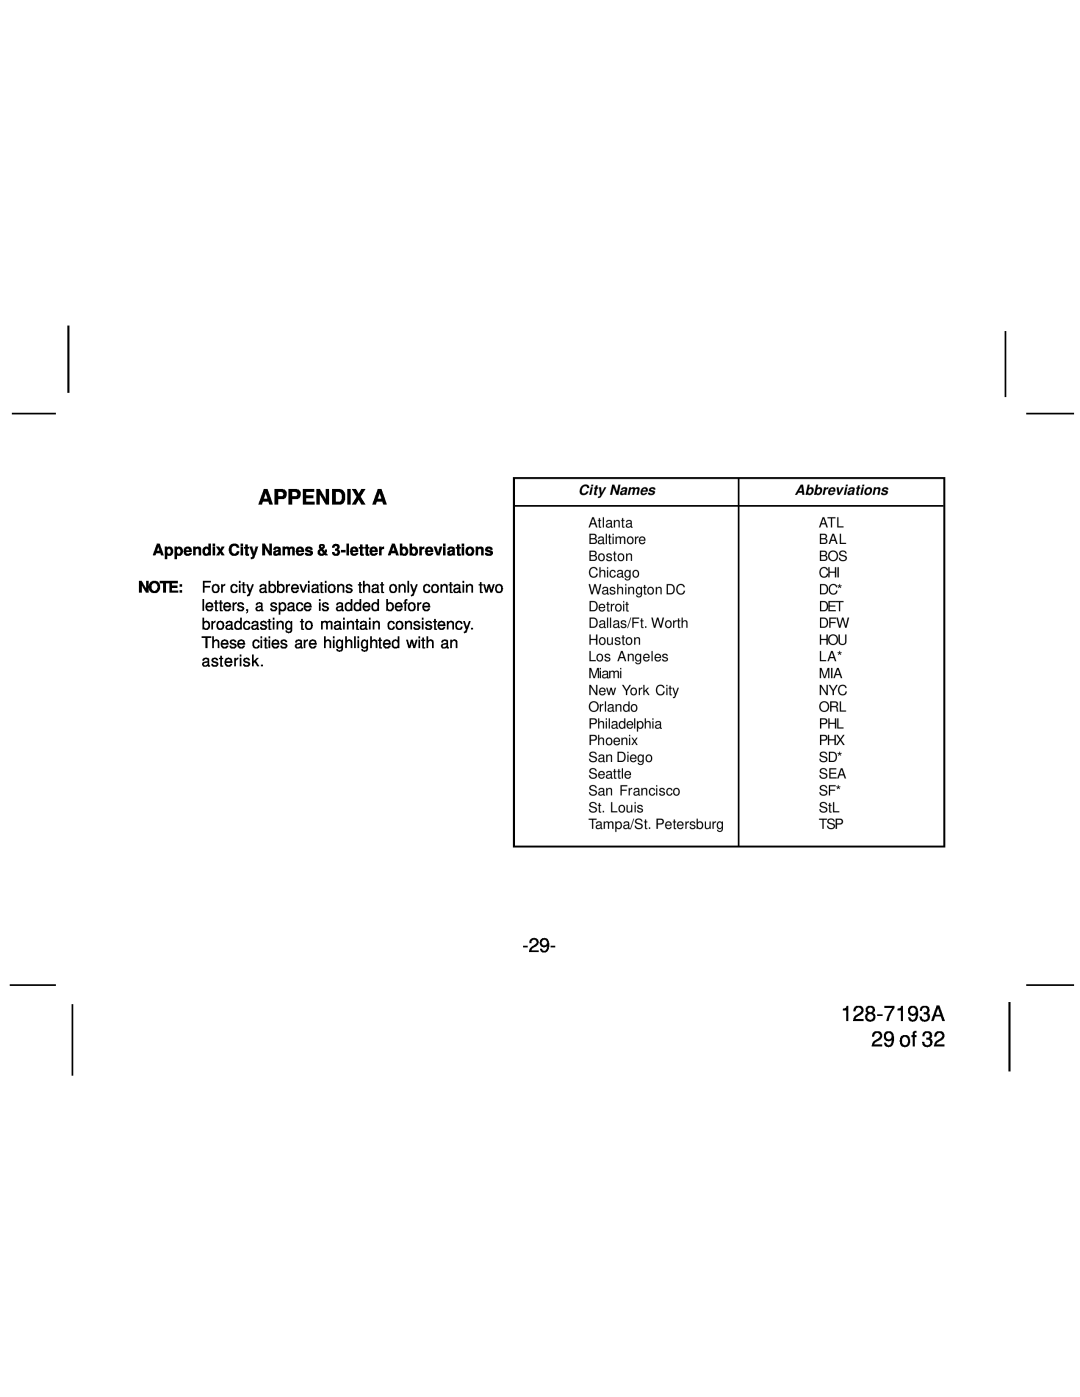 Audiovox SIRPNP3 manual 128-7193A 29 of, Appendix A, Appendix City Names & 3-letterAbbreviations 